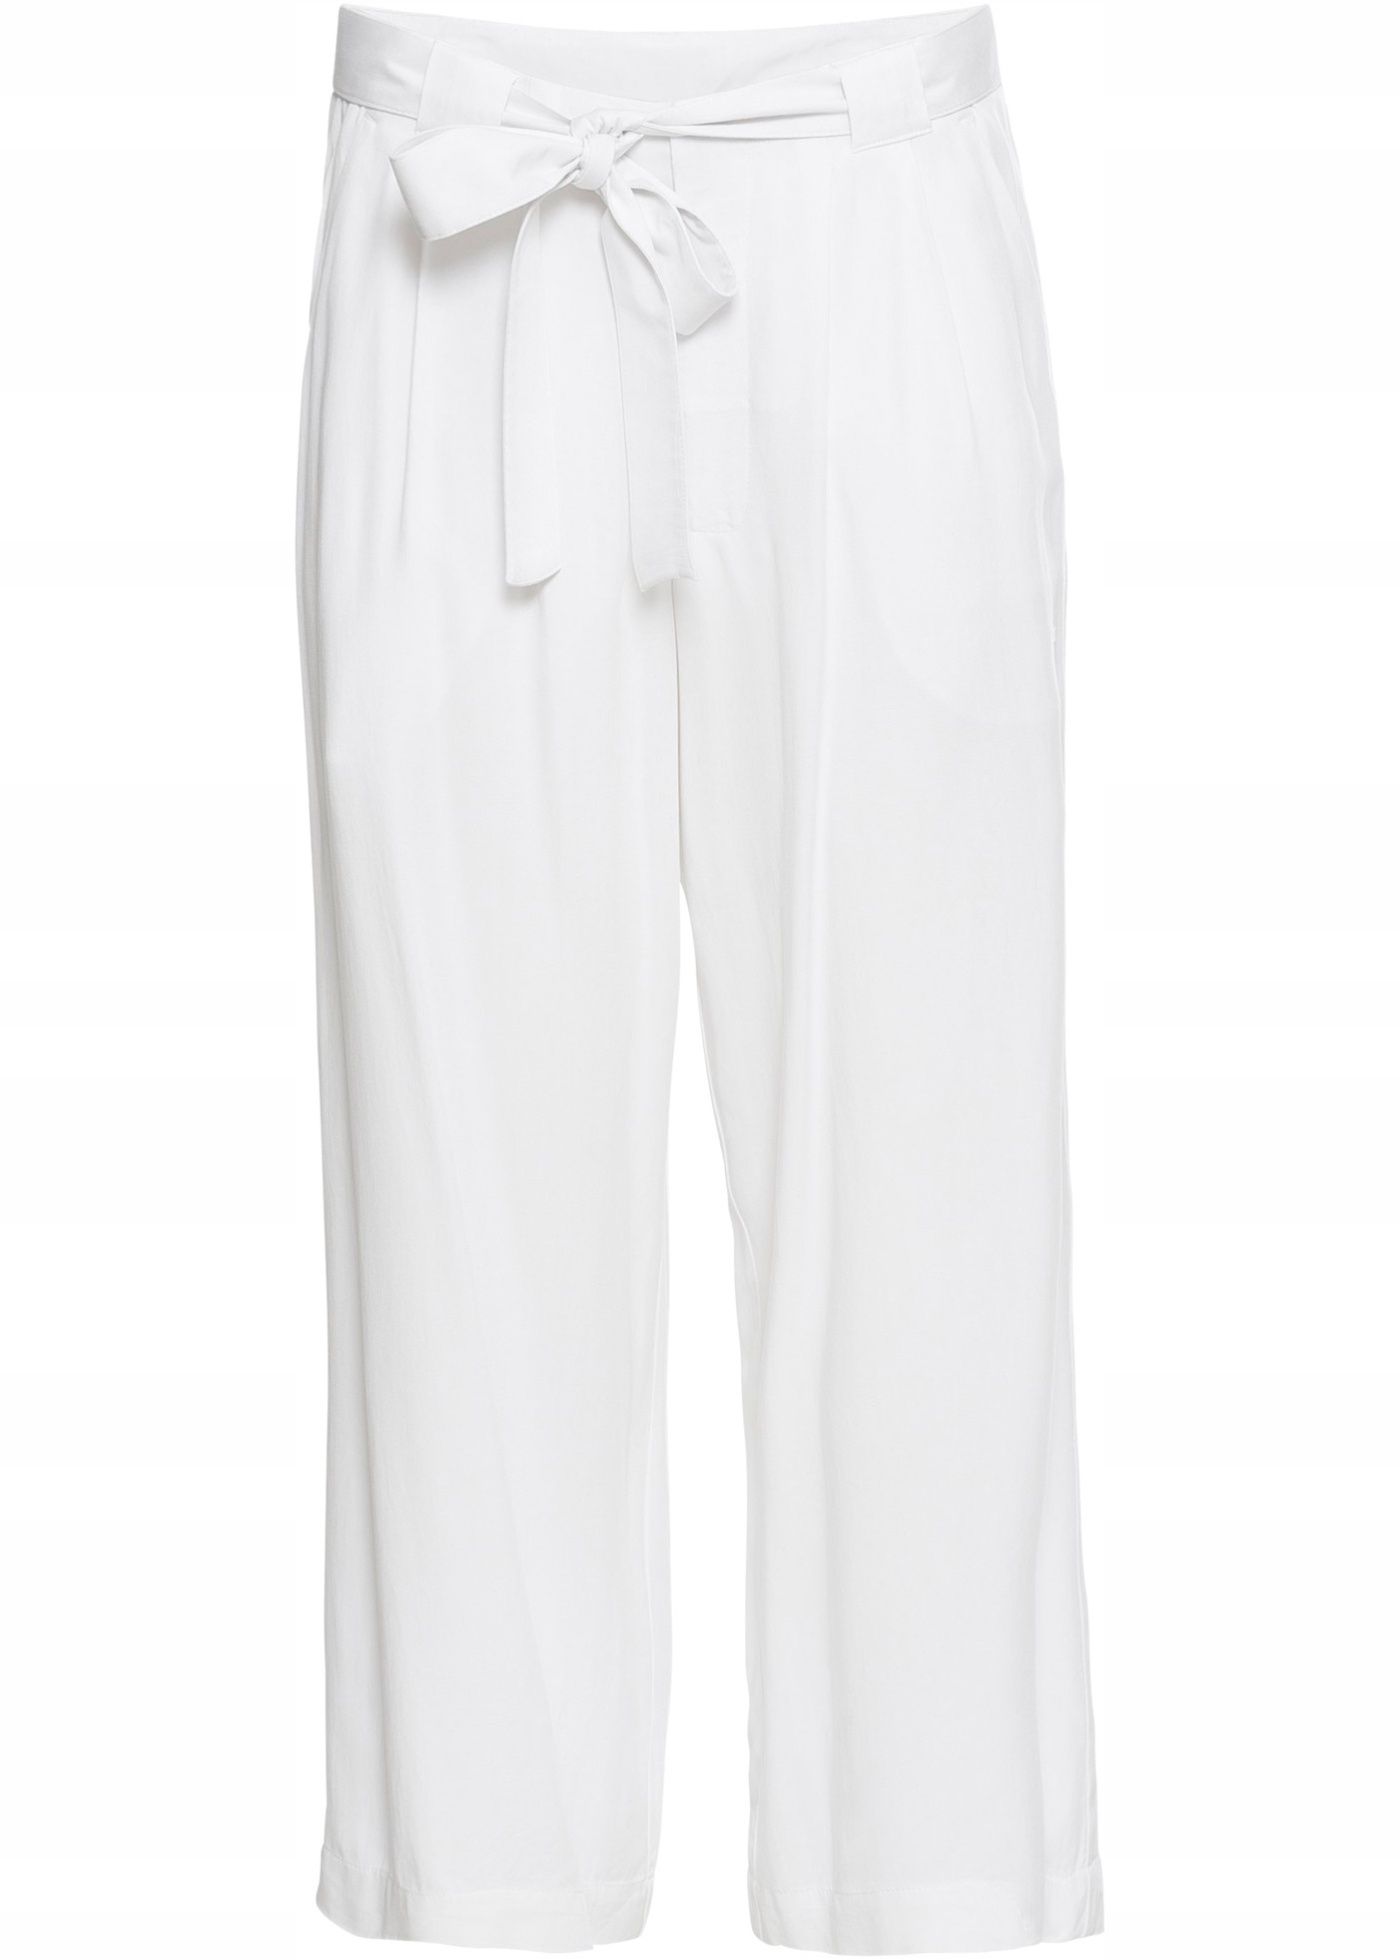 B.P.C spodnie damskie białe: r. 40